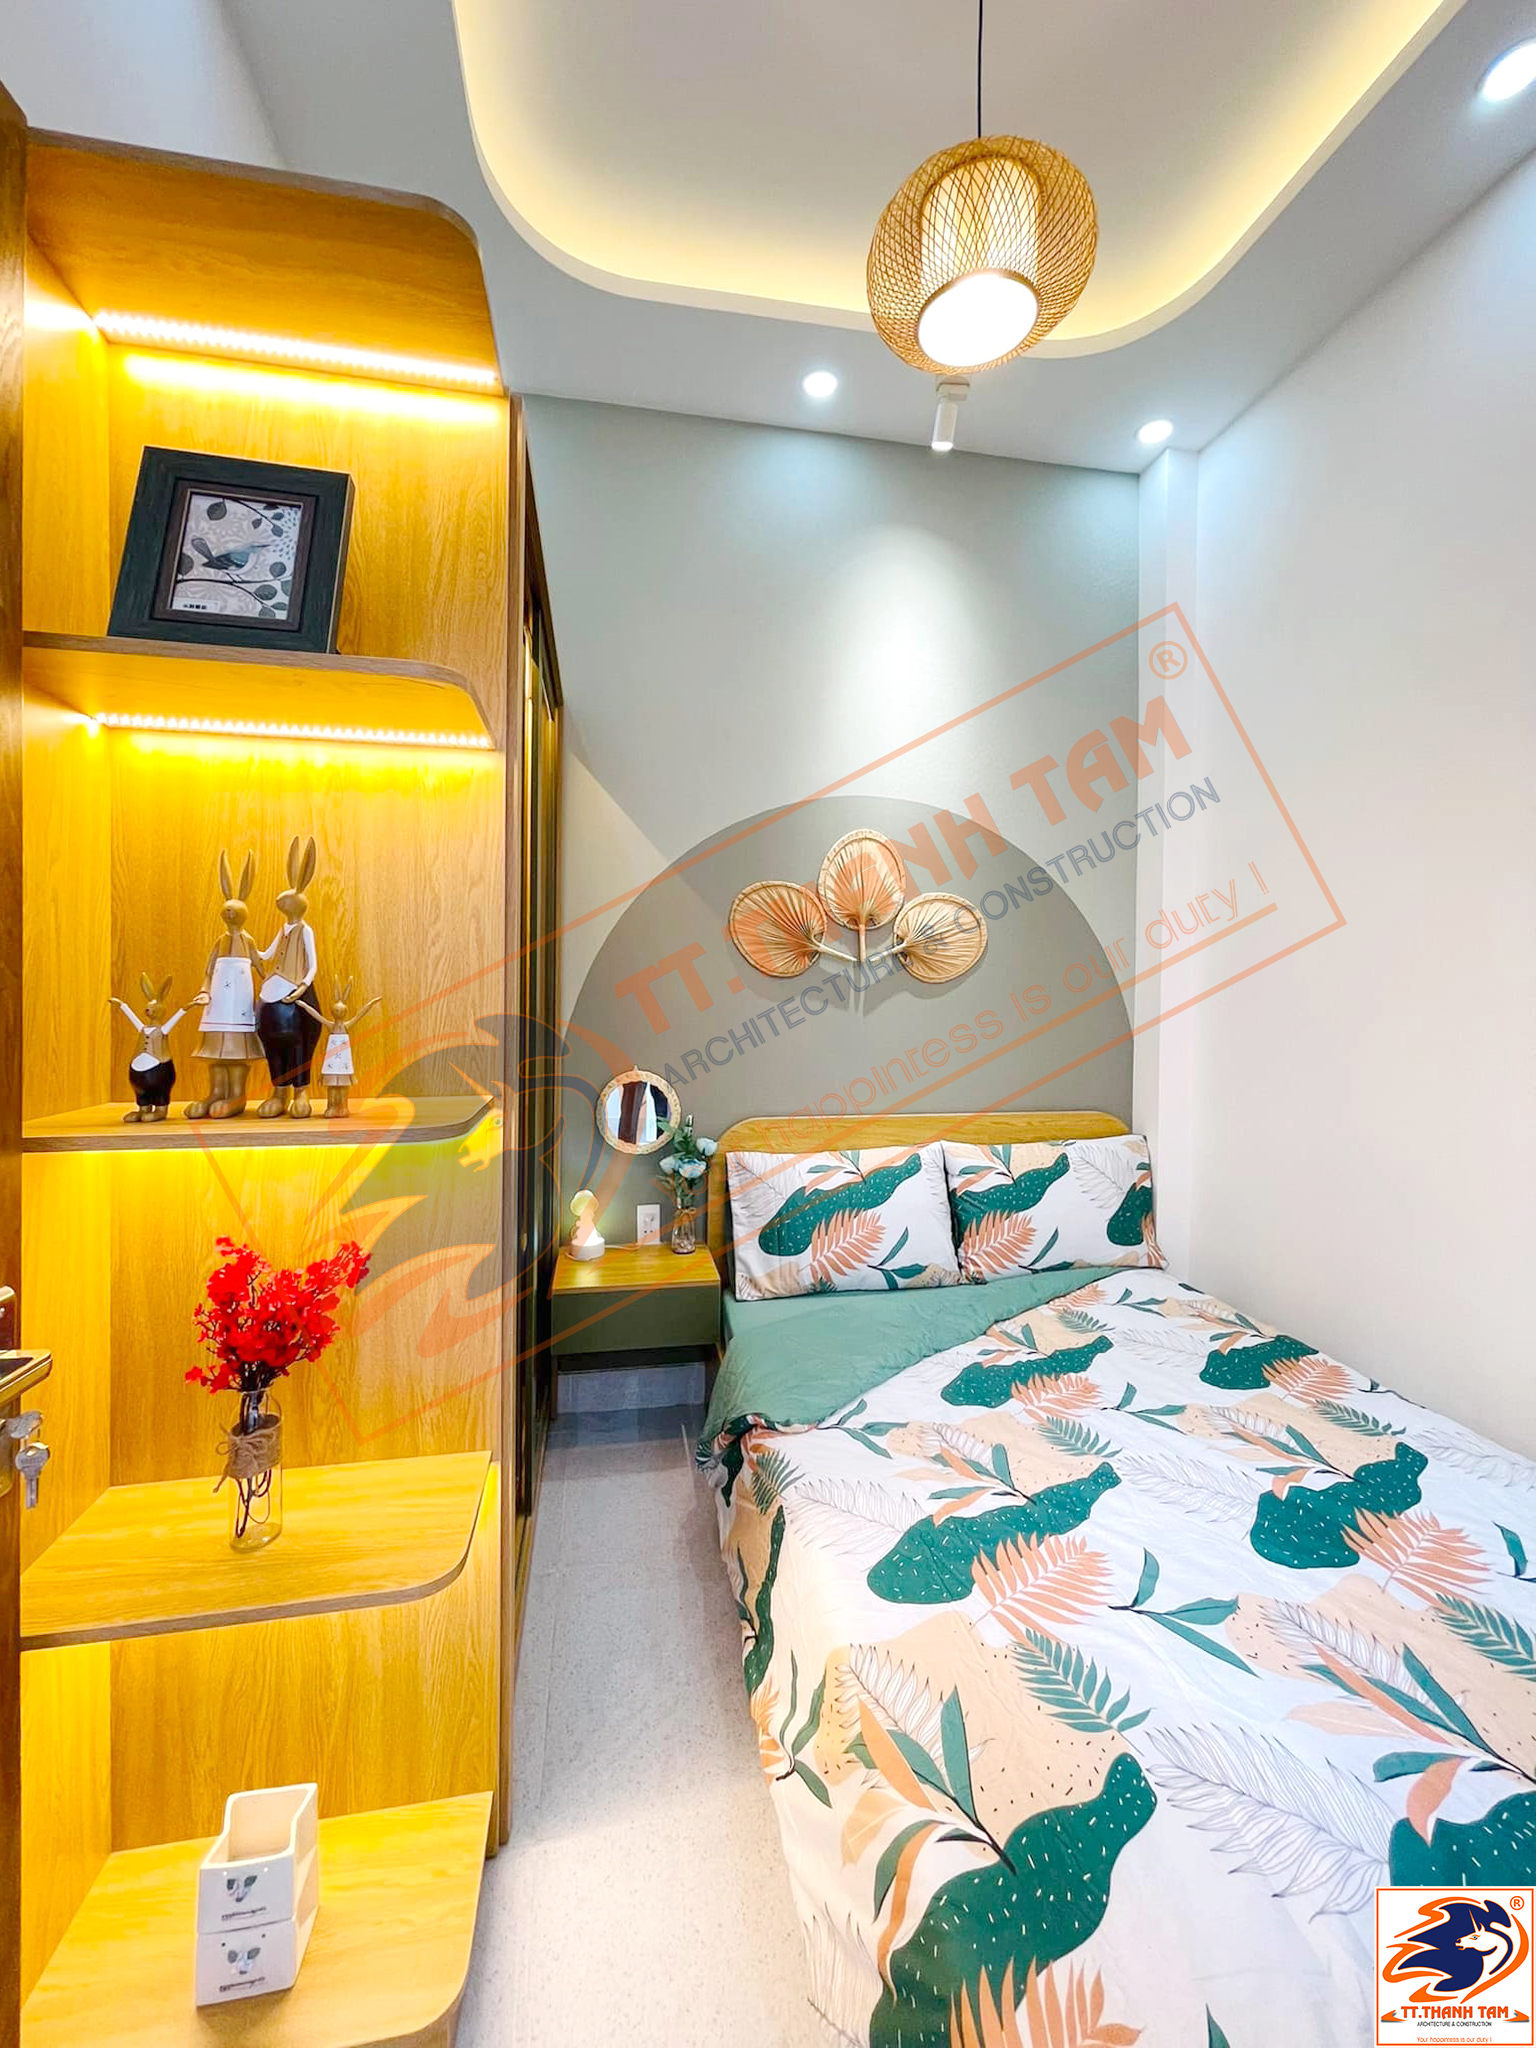 Thiết kế thi công trọn gói Nhà phố mini 2 tầng 5mx6m hiện đại tại Quận Gò Vấp – Hồ Chí Minh